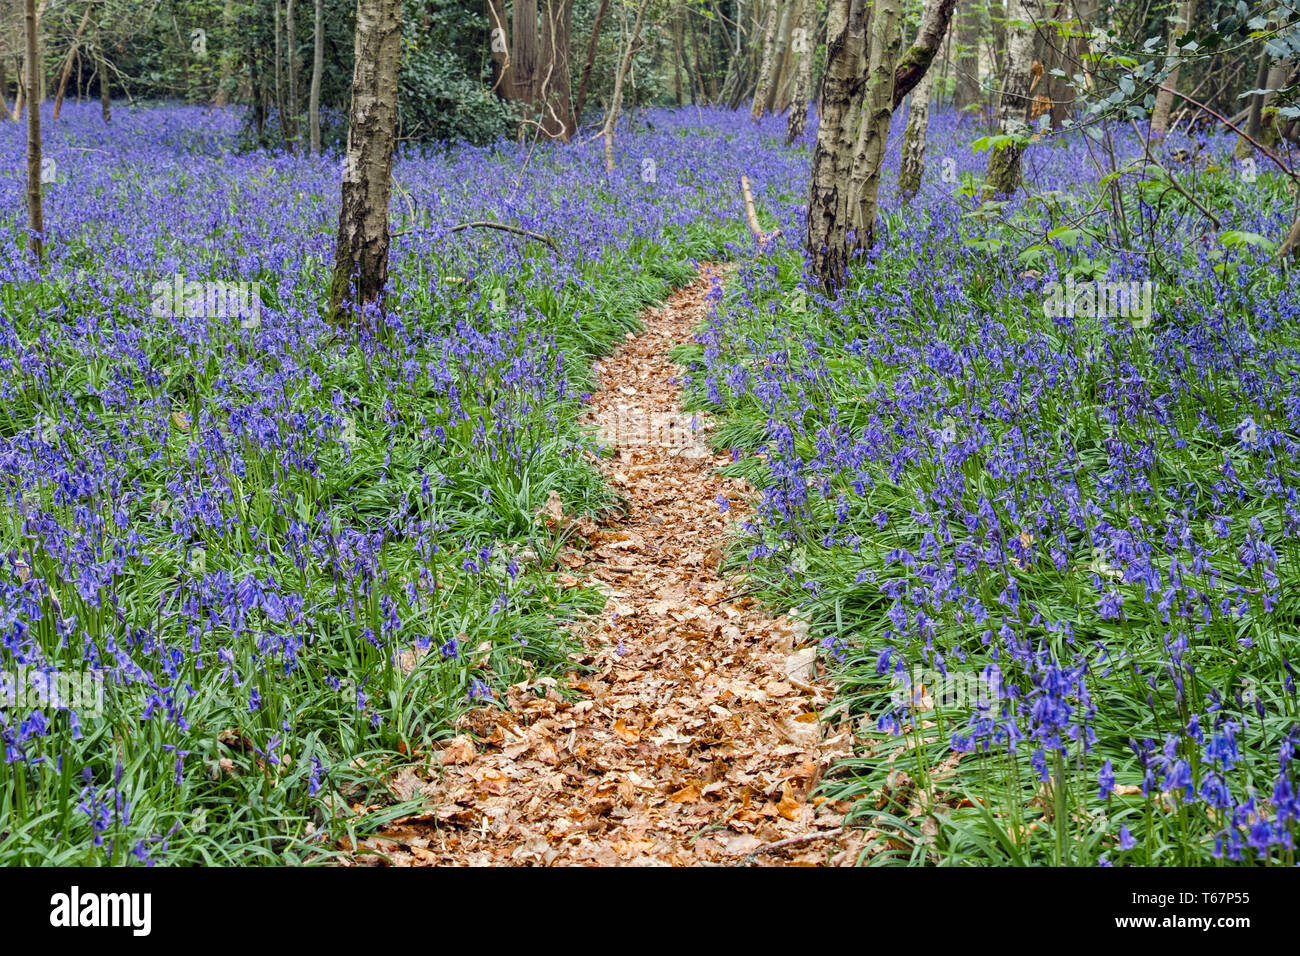 Chemin à travers les jacinthes en poussant dans un bois Bluebell à feuilles caduques au printemps. West Stoke, Chichester, West Sussex, Angleterre, Royaume-Uni, Angleterre Banque D'Images